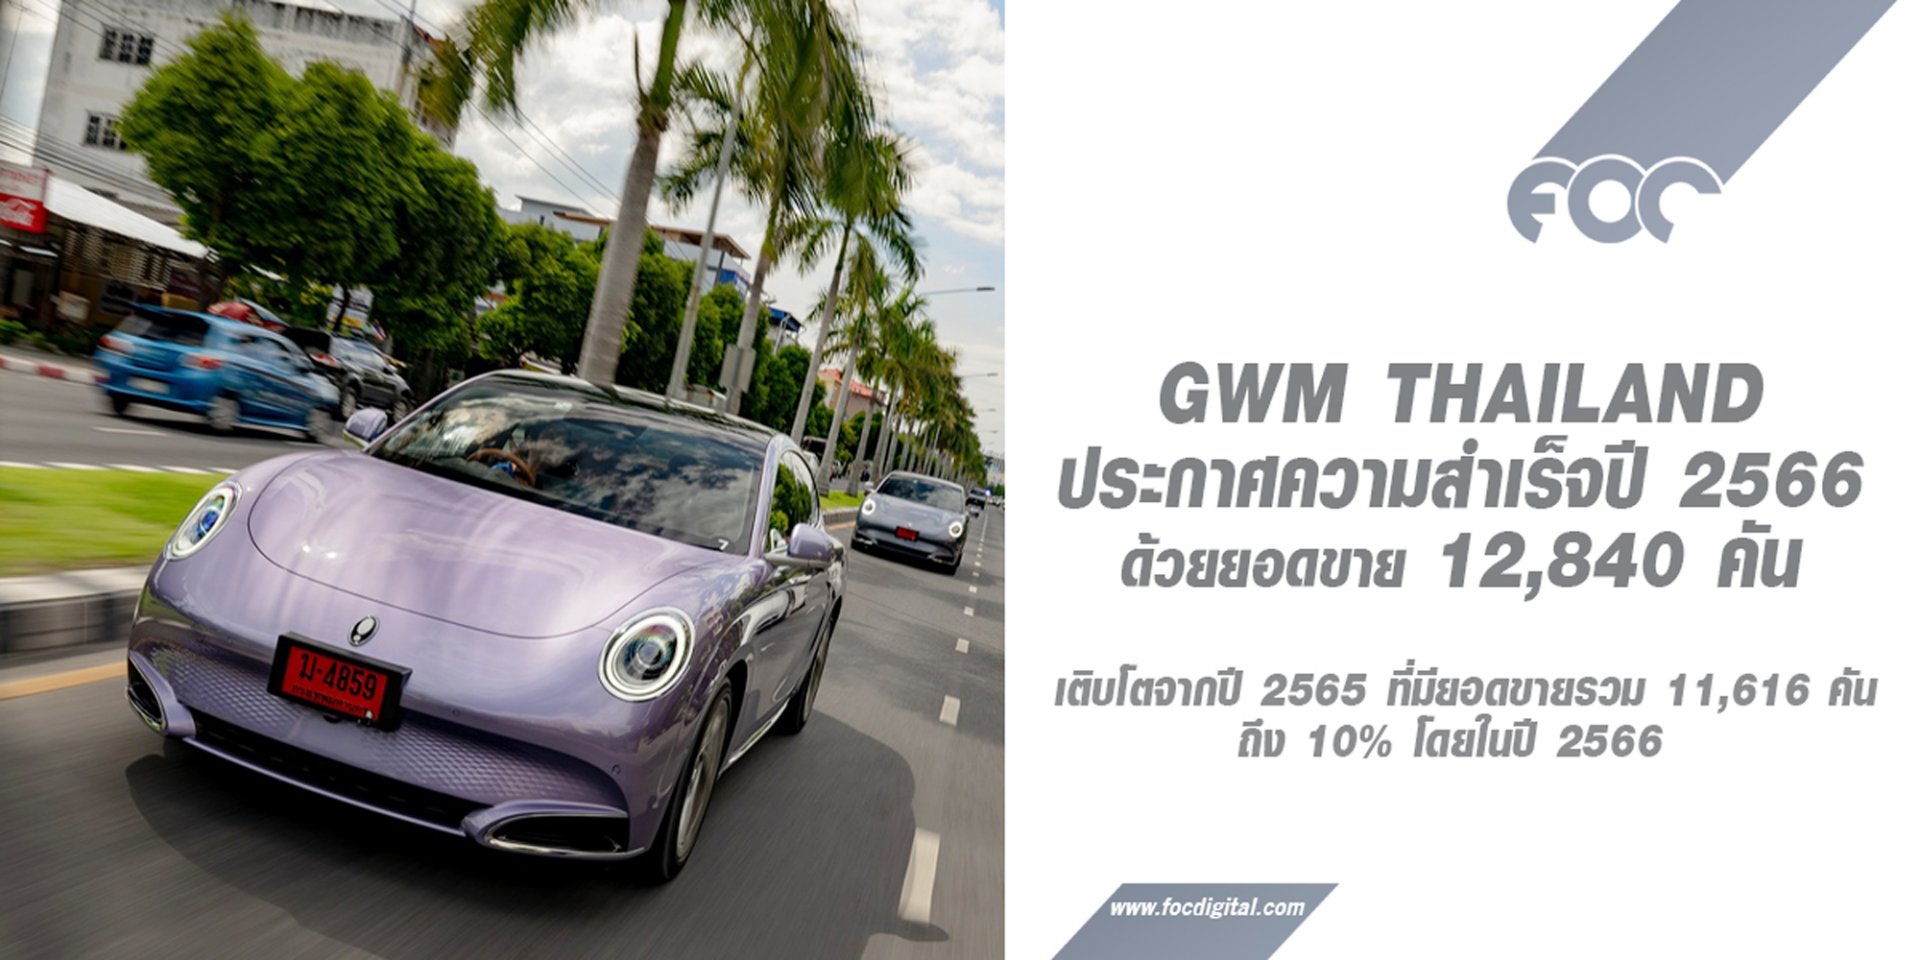 GWM ประกาศความสำเร็จในปี 2566 ด้วยยอดขาย 12,840 คัน  เติบโต 10% ตอกย้ำการเป็นหนึ่งในผู้นำยานยนต์ไฟฟ้าของไทย